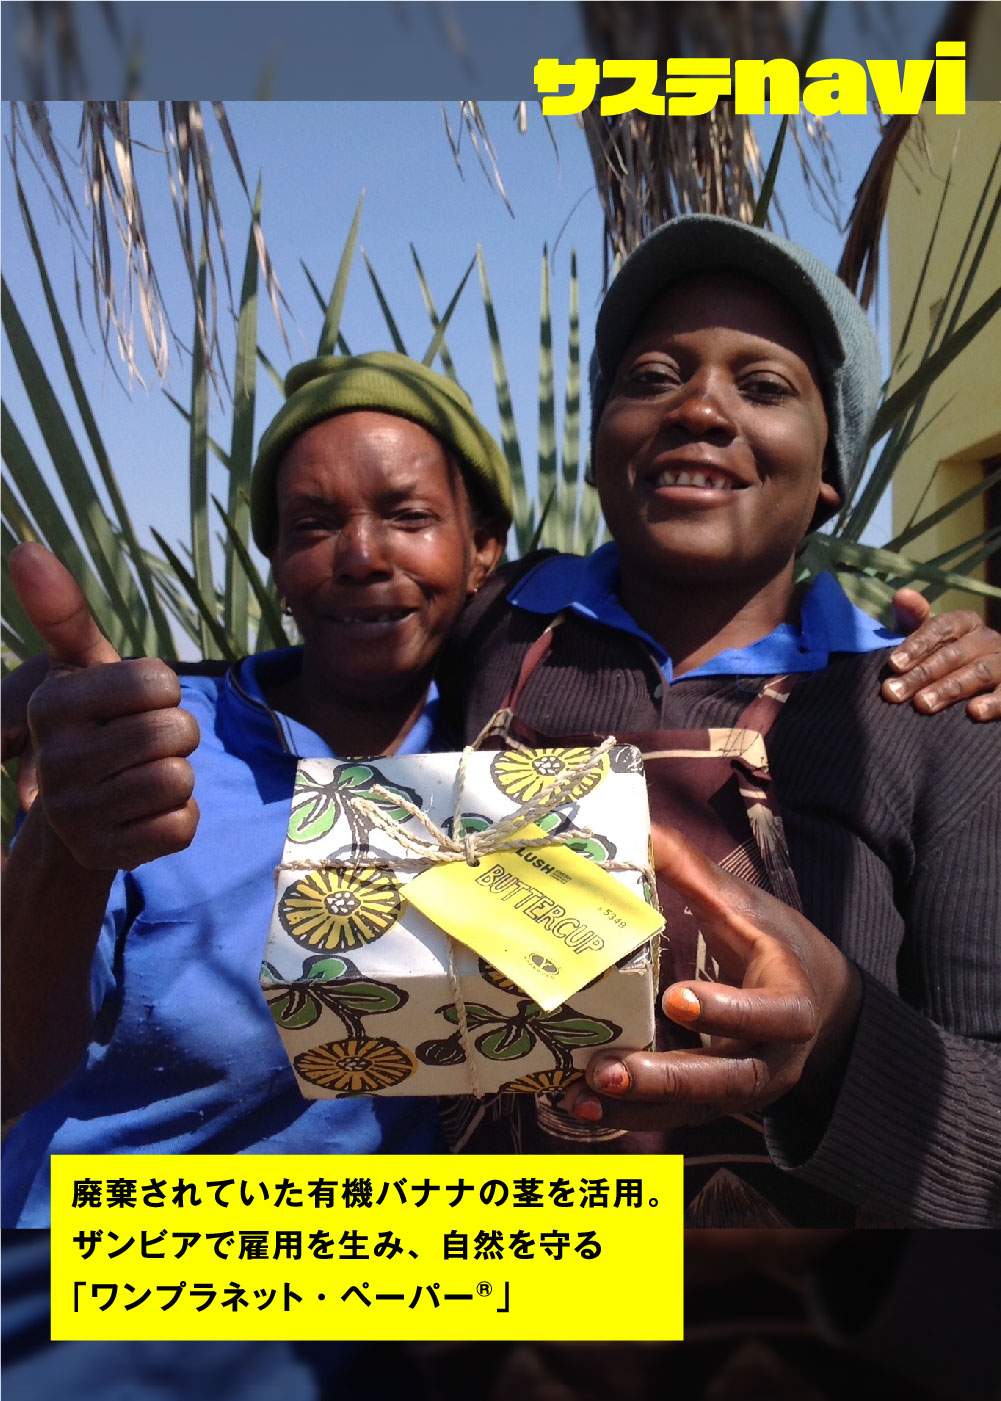 廃棄されていた有機バナナの茎を活用。ザンビアで雇用を生み、自然を守る「ワンプラネット・ペーパー®」